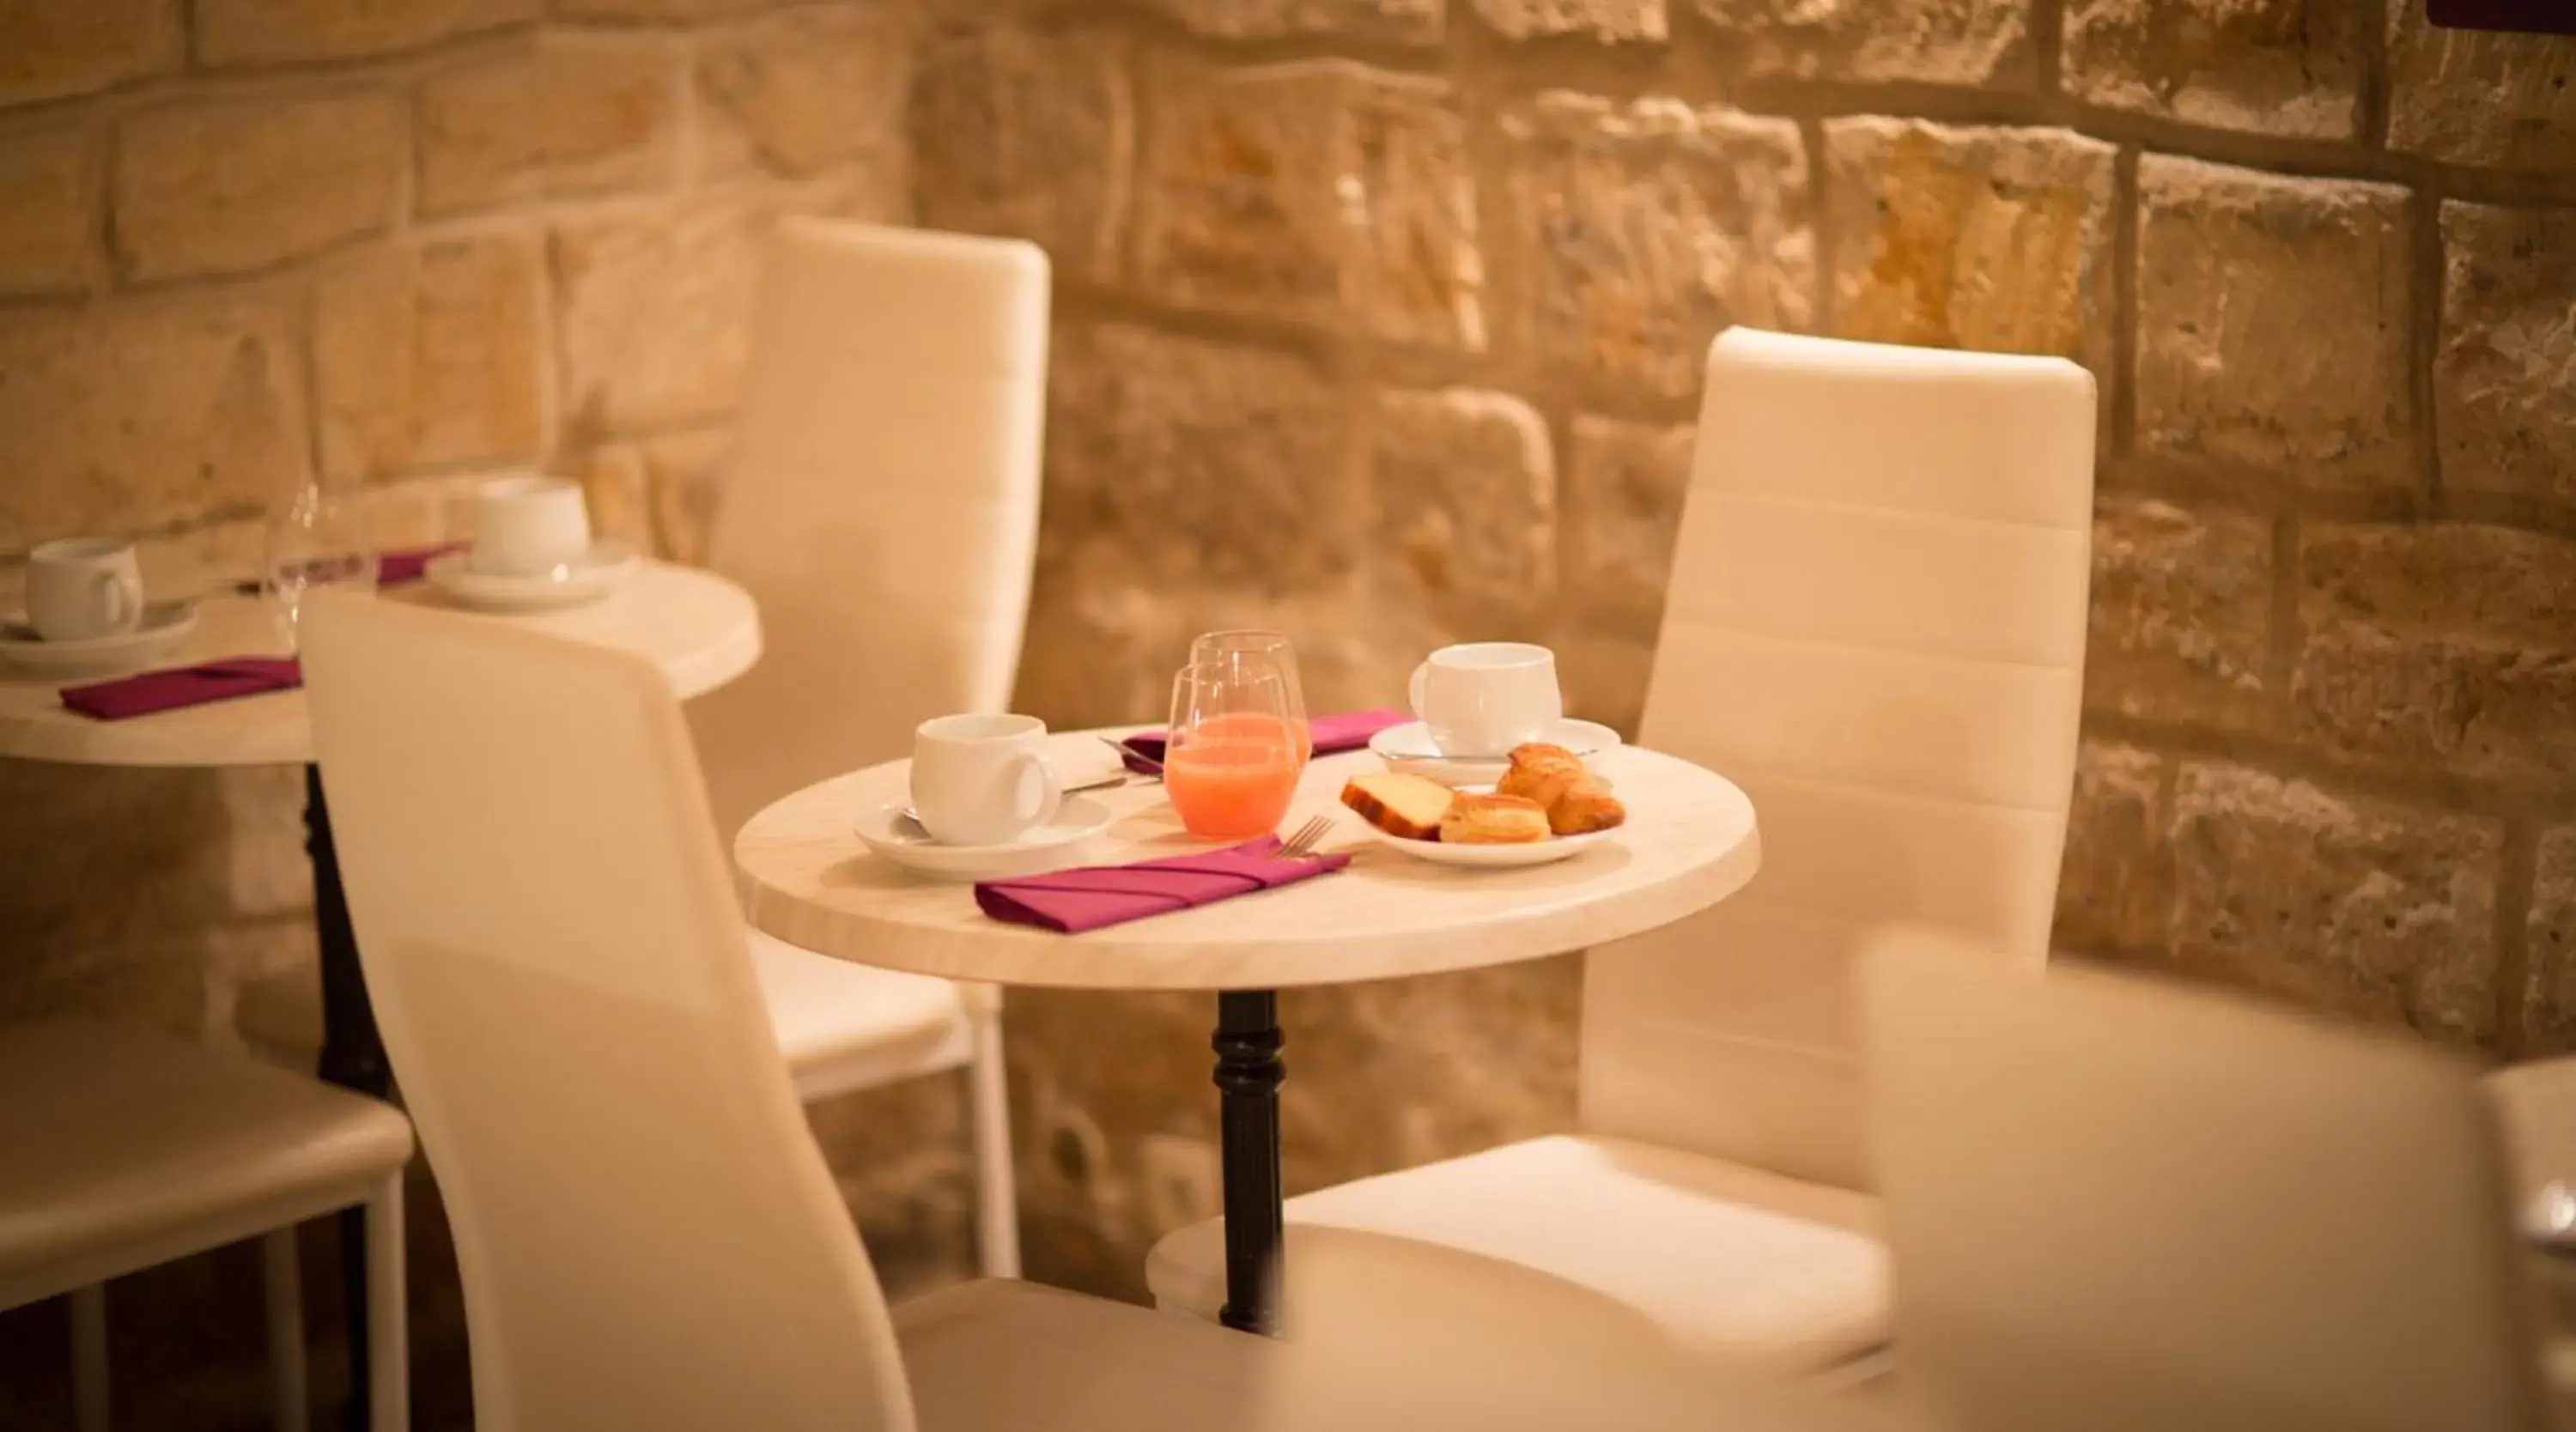 Buffet breakfast in Hotel Alexandrine Opera